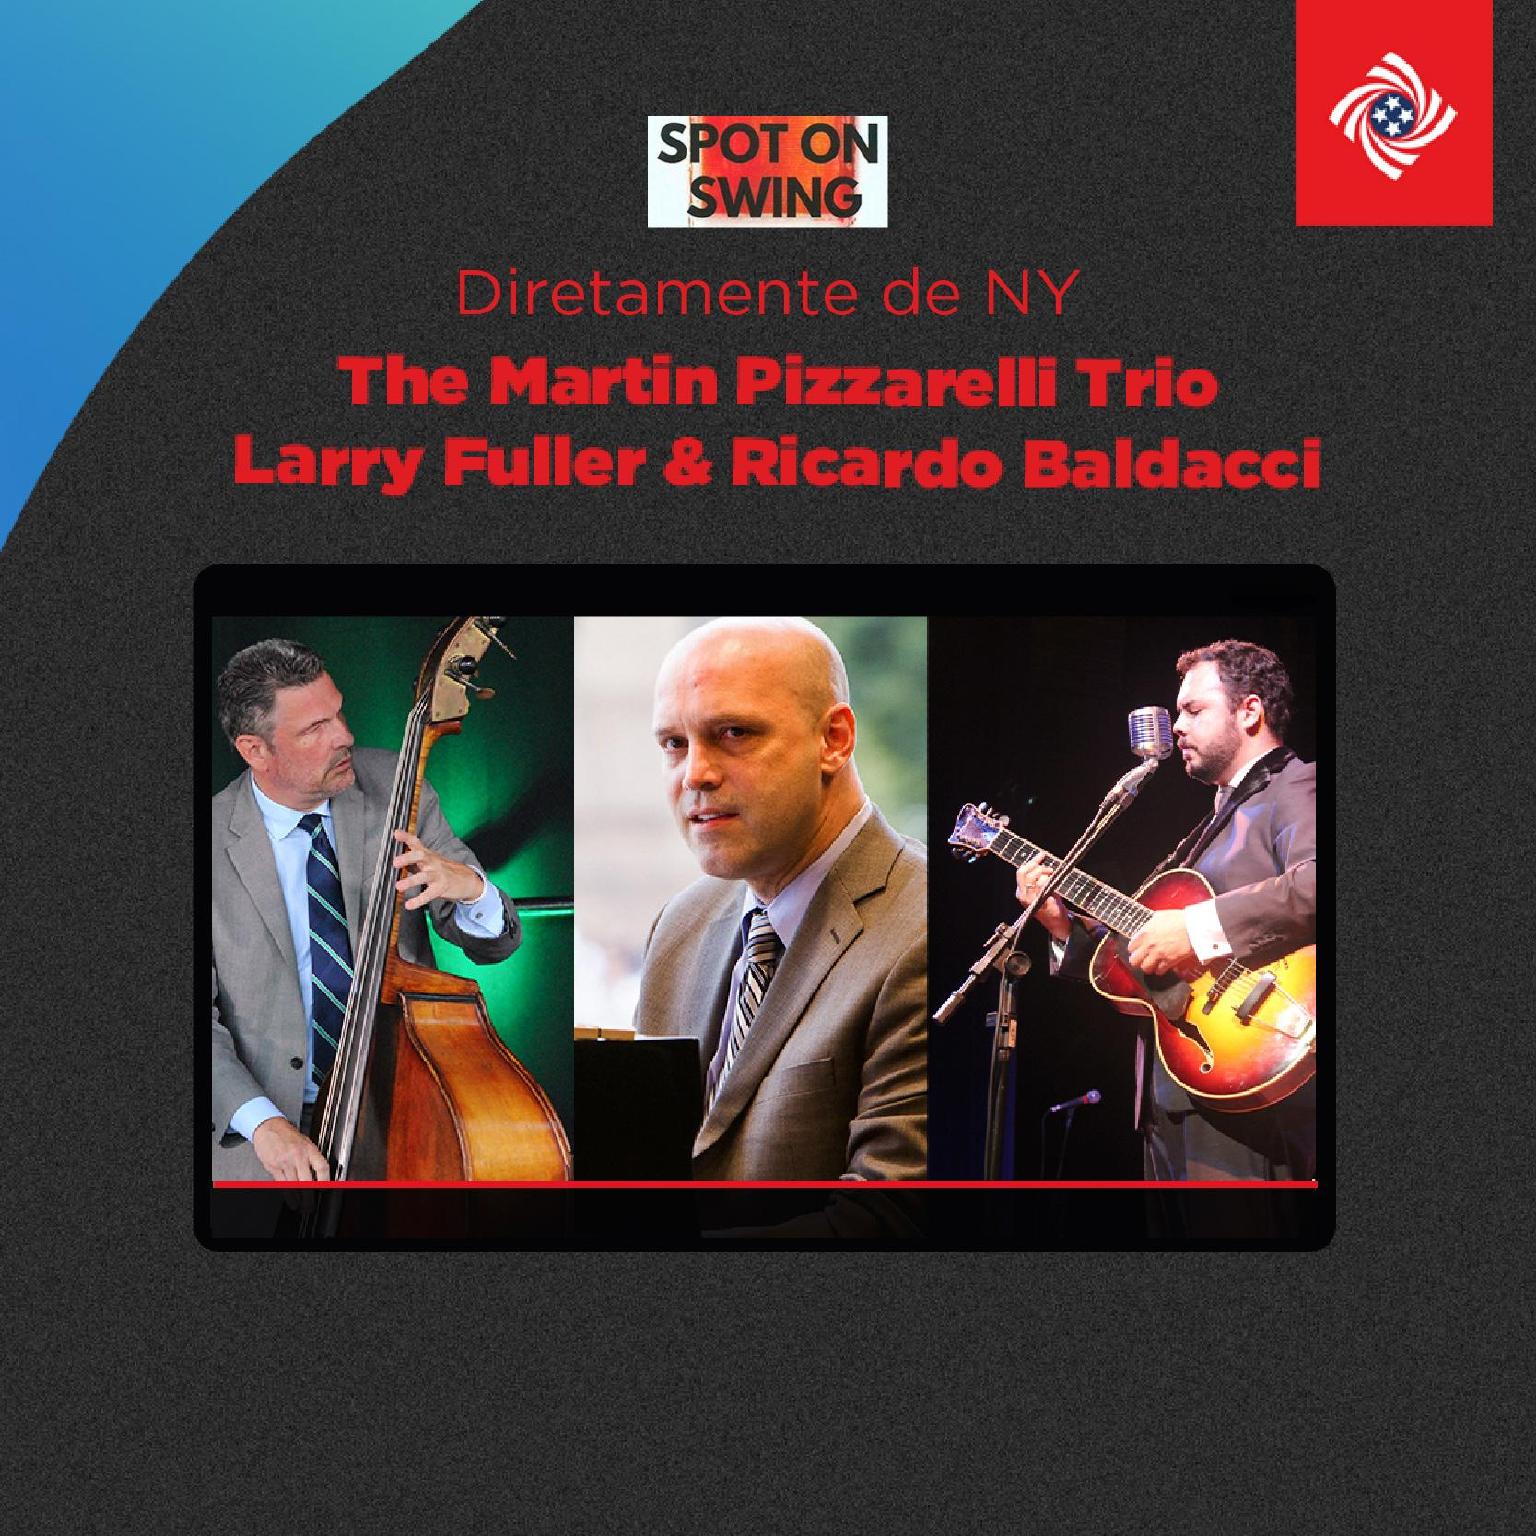 The Martin Pizzarelli Trio